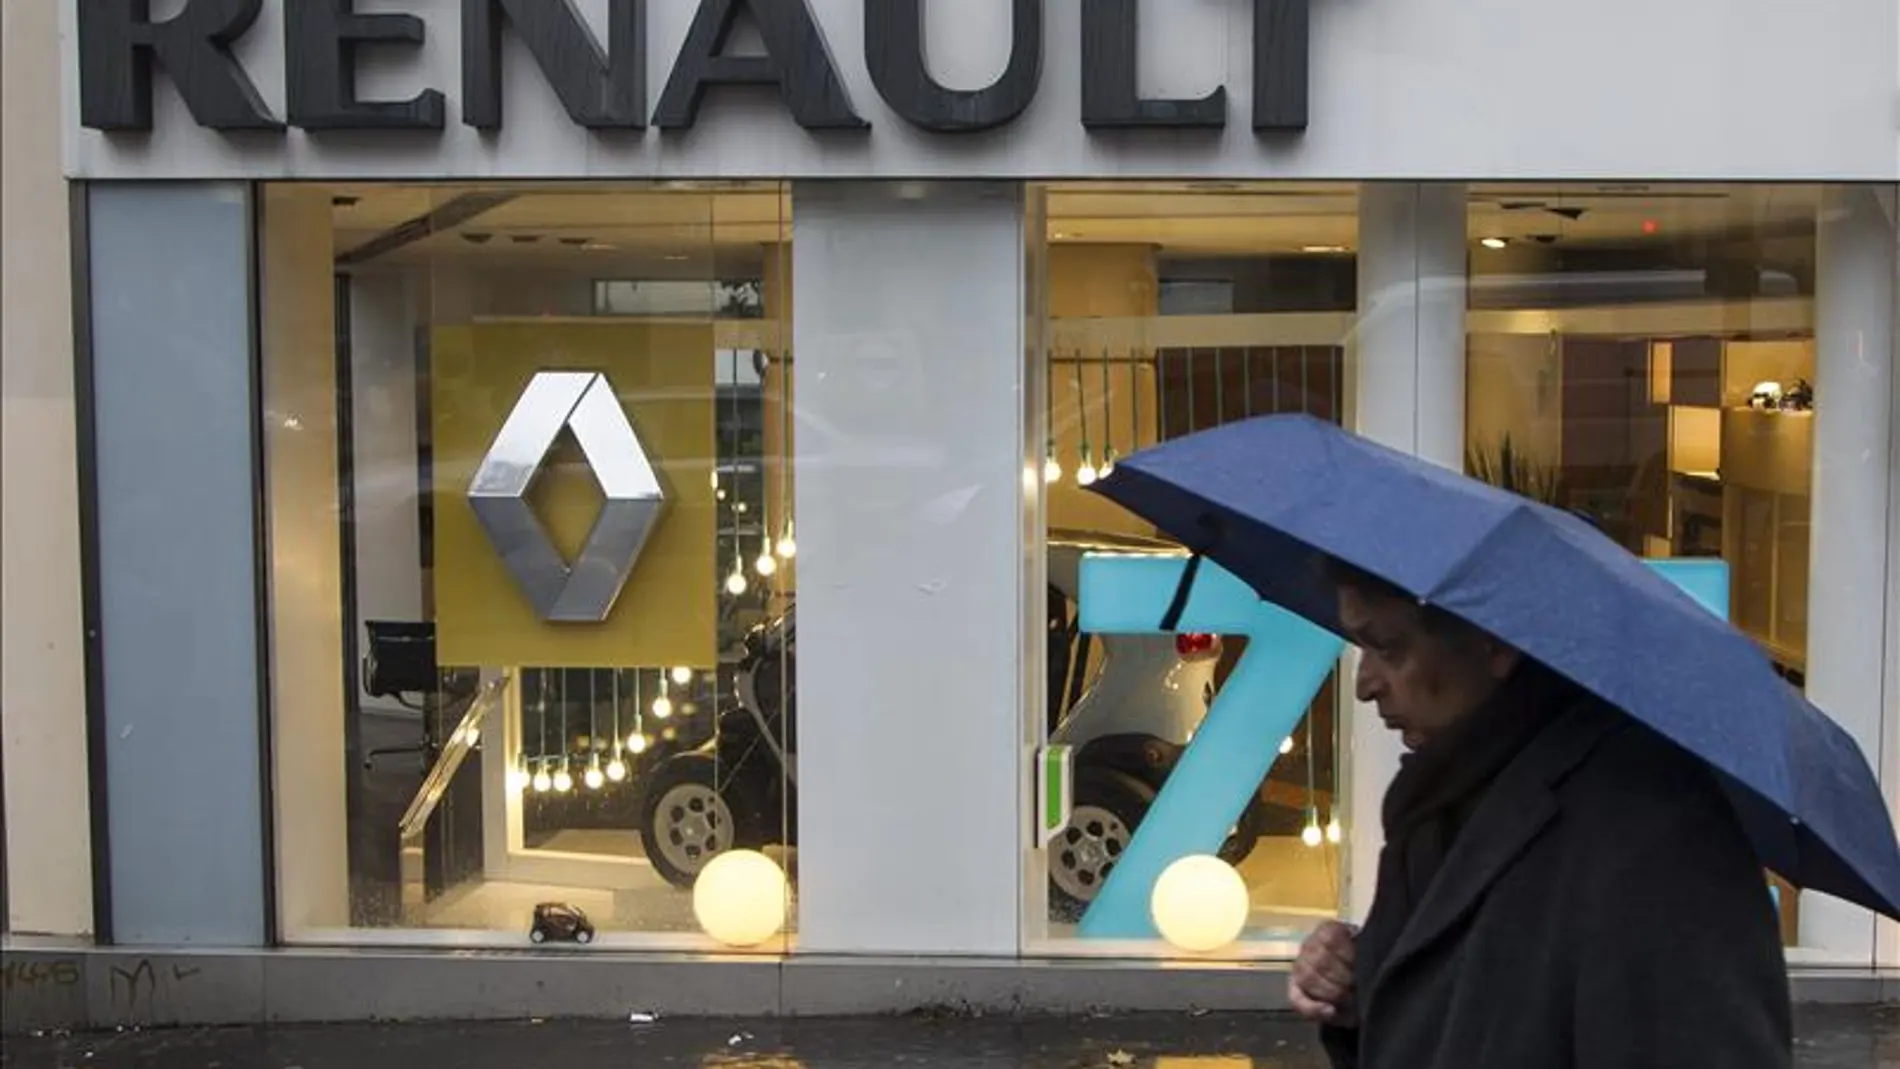 Fotografía de un concesionario de Renault en París